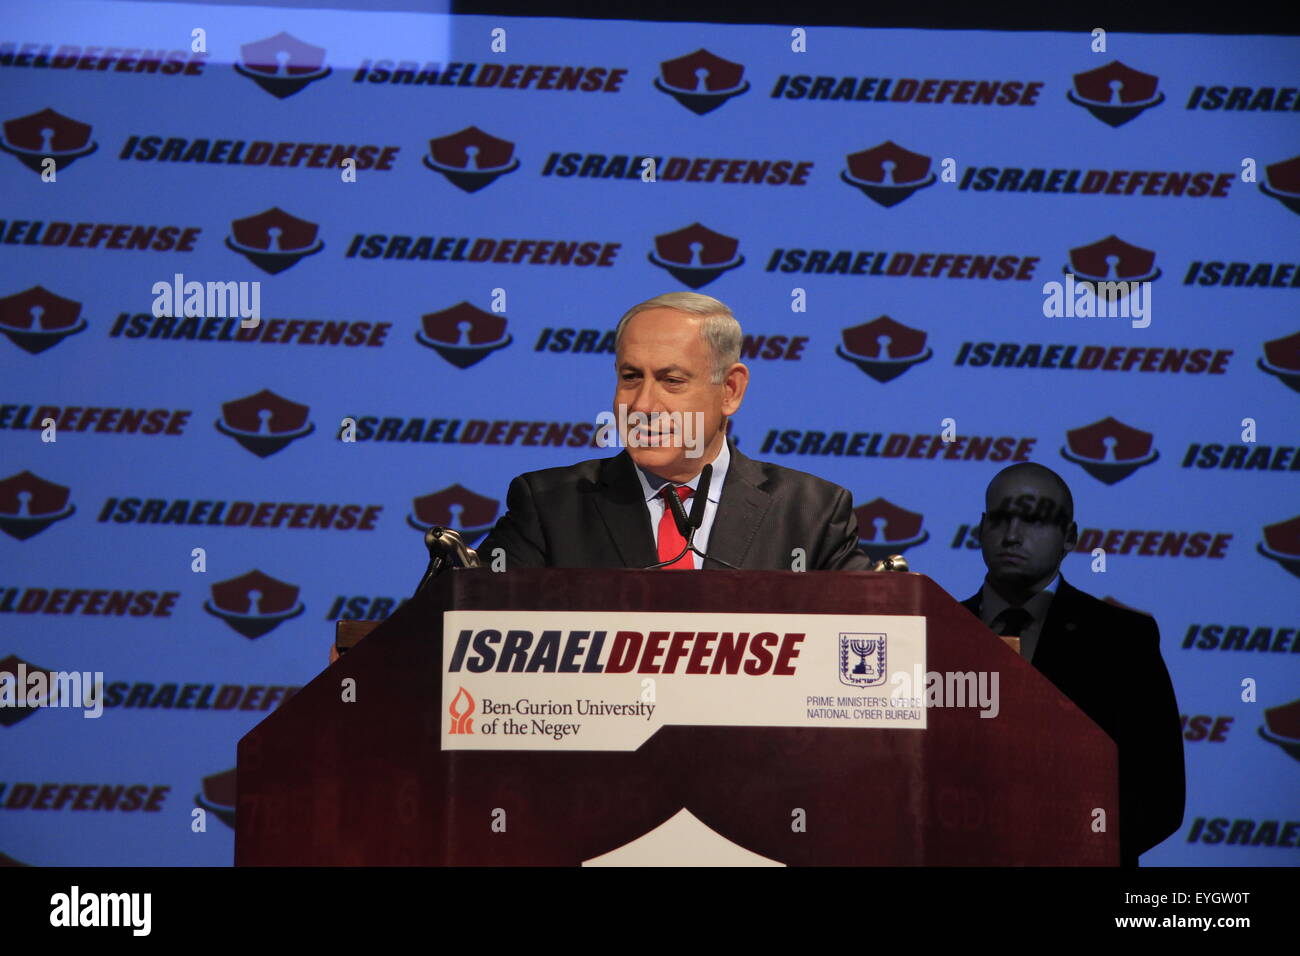 PM israeliano Benjamin Netanyahu apre CyberTech 2014 Exhibition & Conference di Tel Aviv che è frequentata da centinaia di internazionali e le imprese israeliane Foto Stock